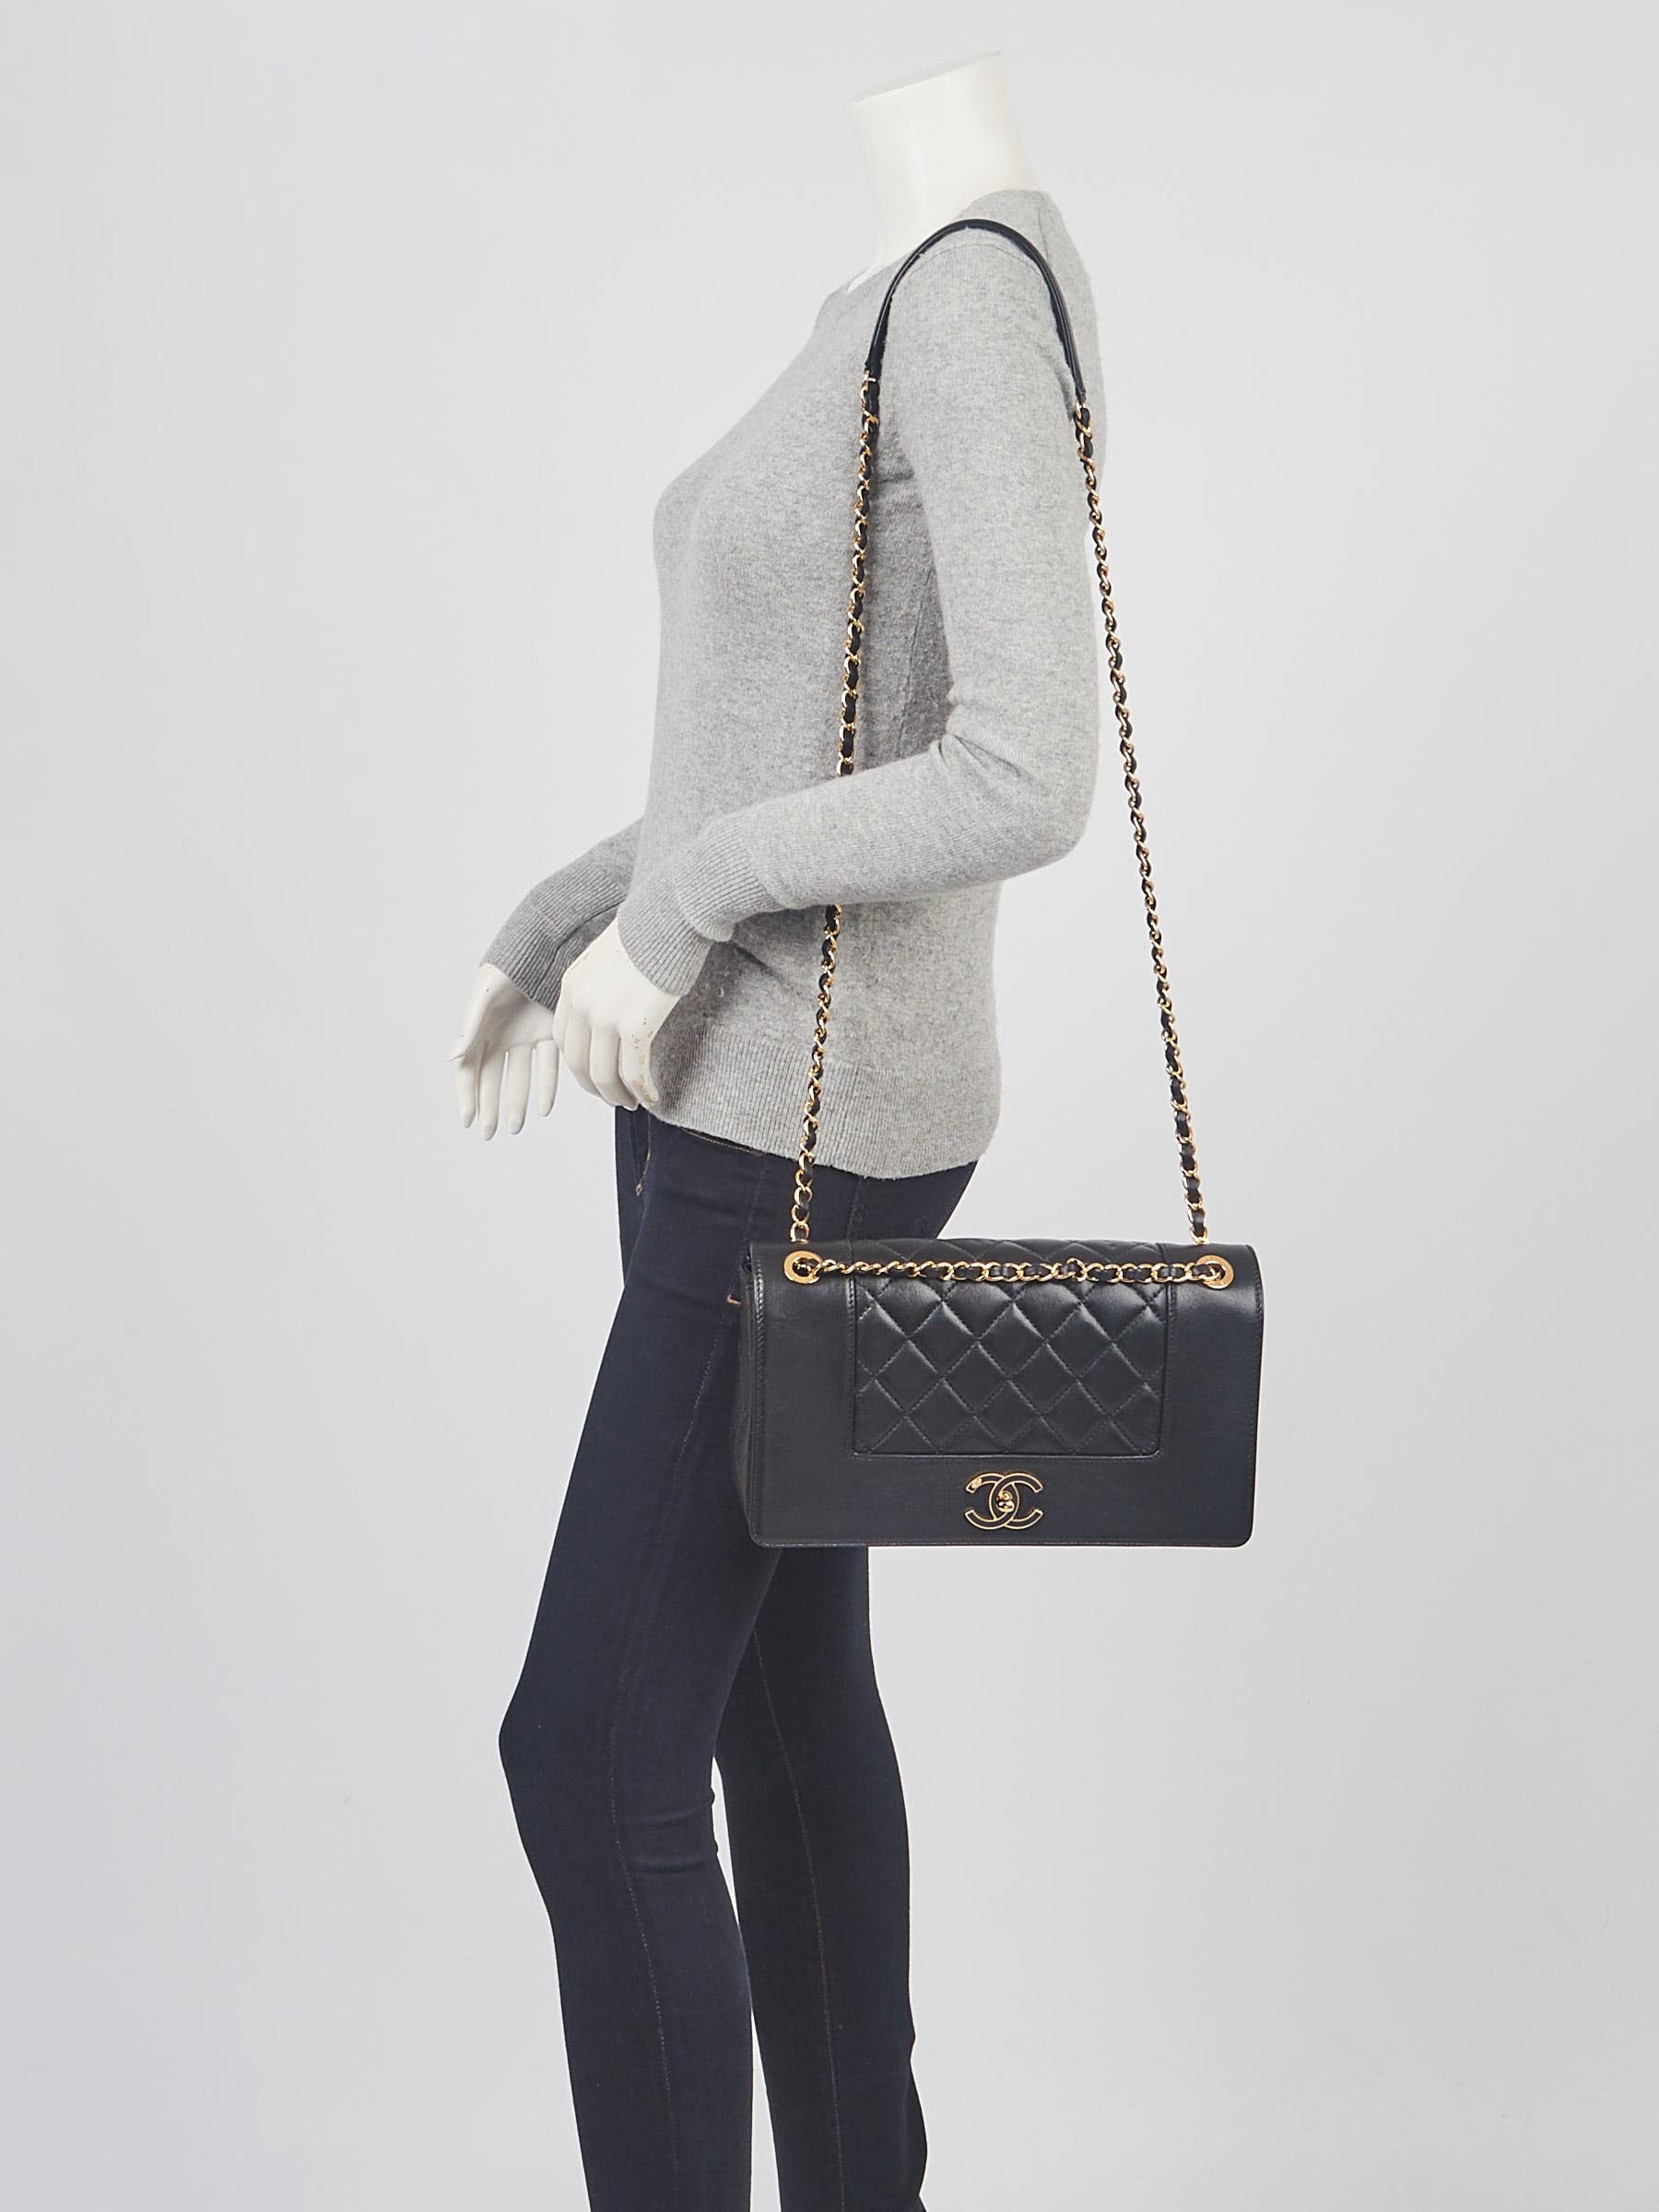 CHANEL Mademoiselle Vintage Flap Sheepskin Leather Shoulder Bag Black-US